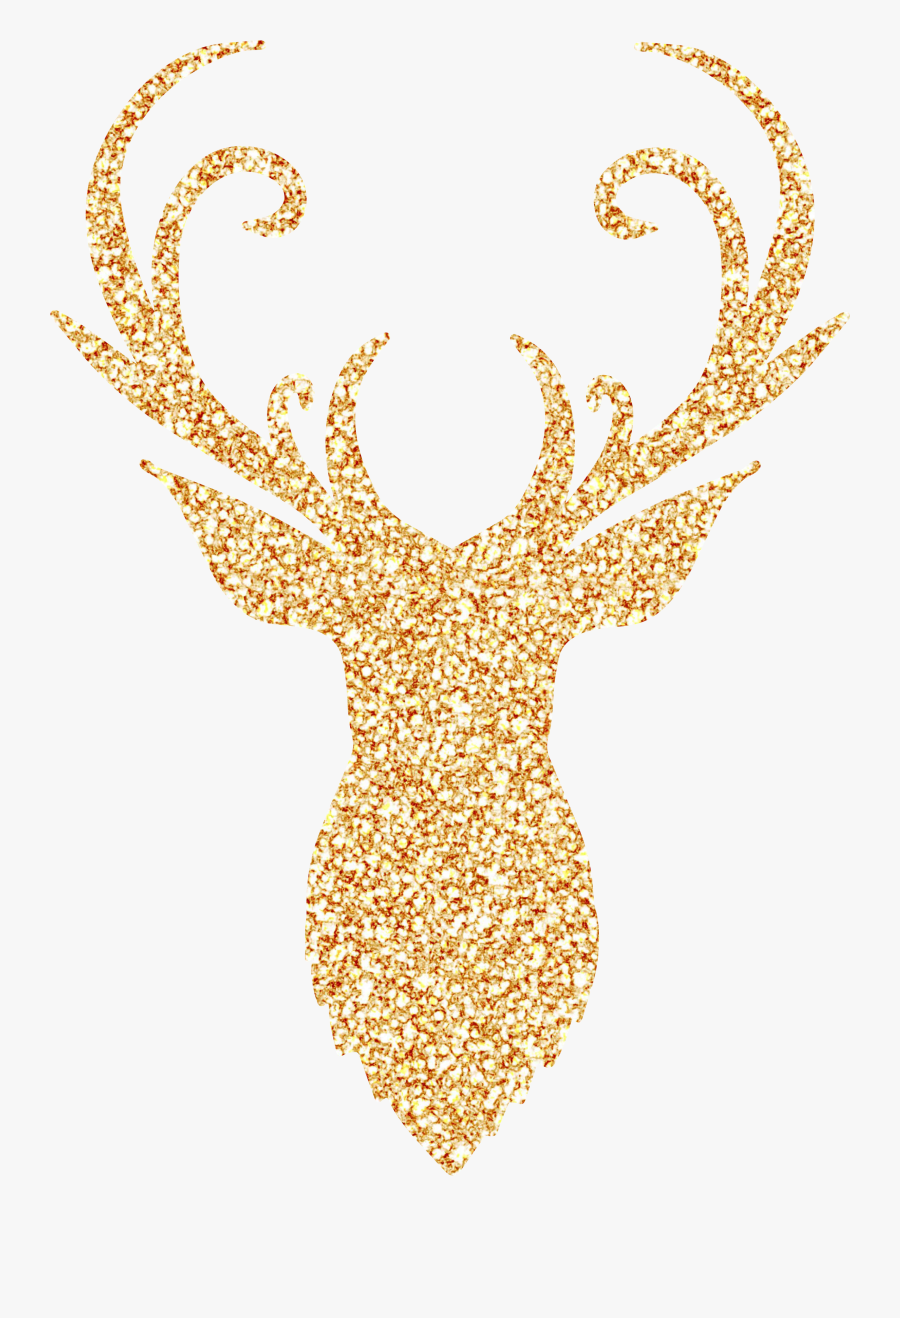 Gold Clipart Reindeer - Deer Head Silhouette Gold, Transparent Clipart